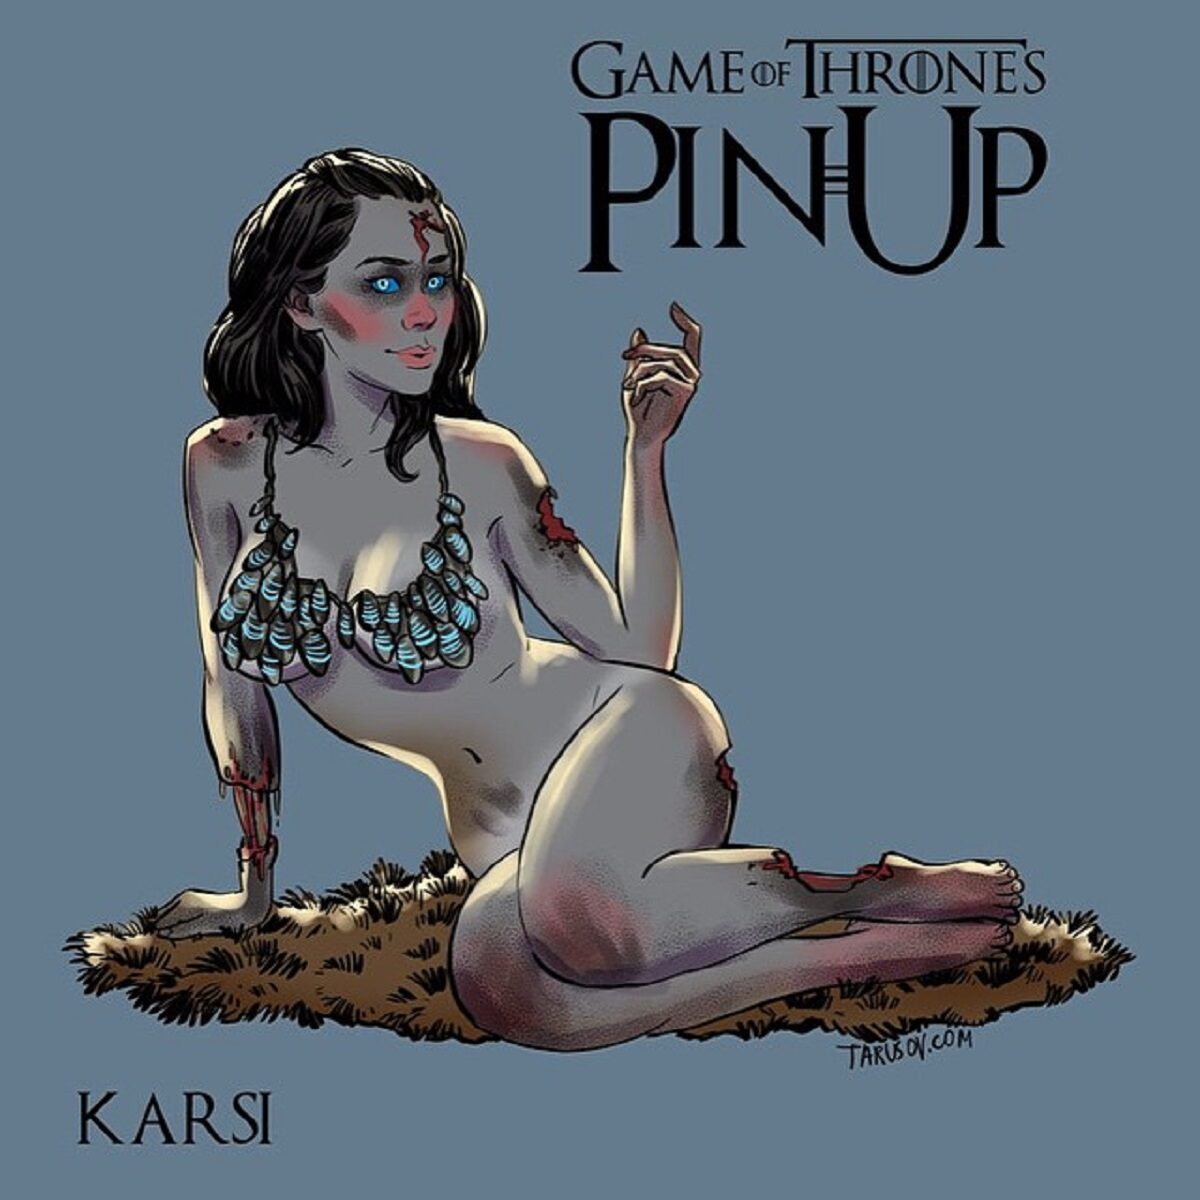 Andrew Tarusov ilustrador russo cria versao pin up de personagens de Game of Thrones 15